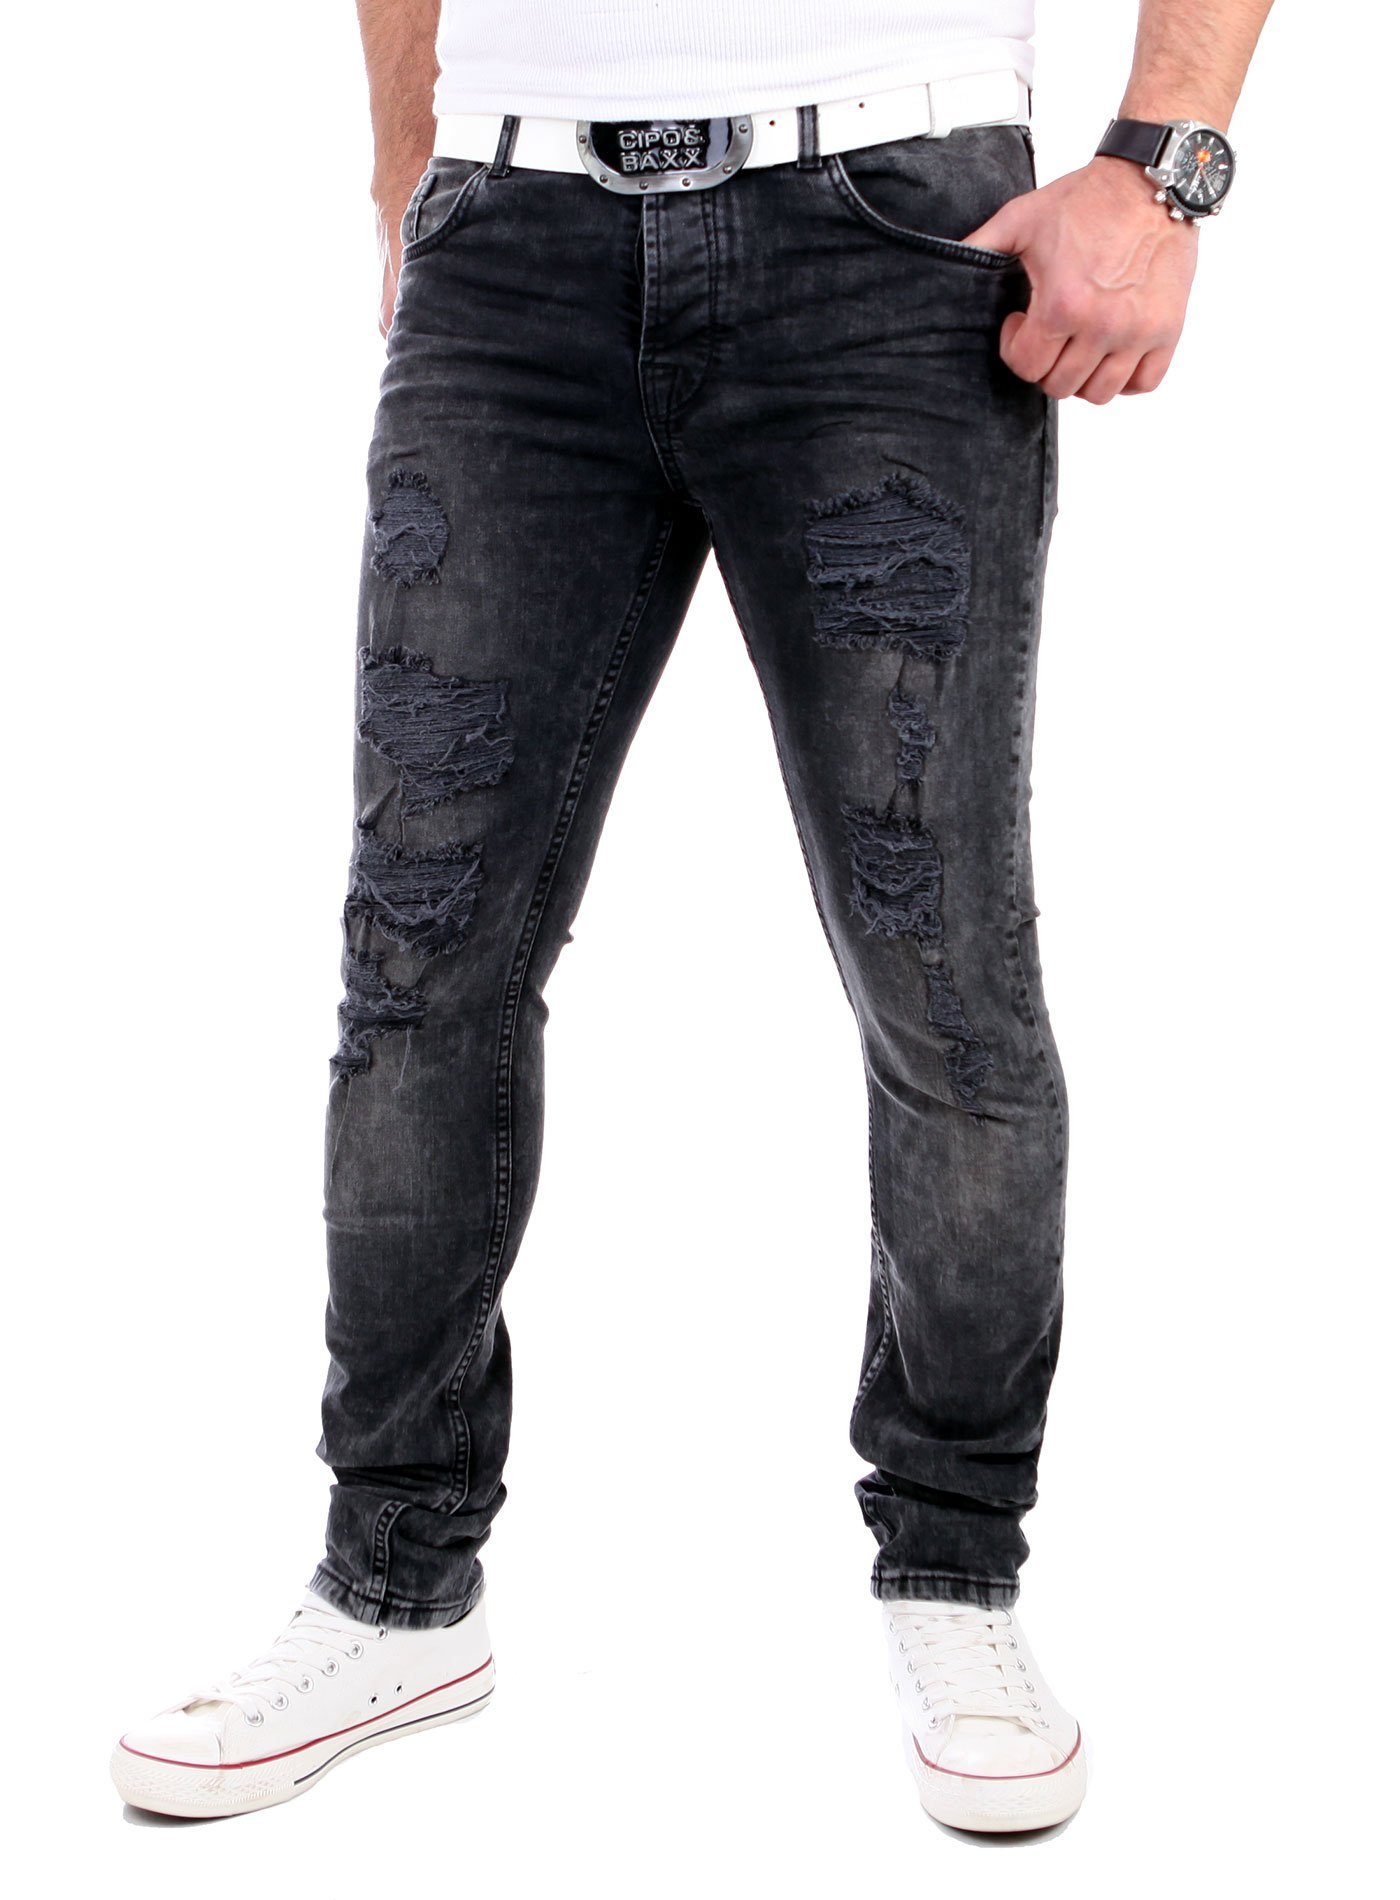 Keno Jeans Destroyed-Jeans Look Destroyed Herren Fit Rock Slim VSCT Männer-Hose Jeans Heavy VSCT Destroyed